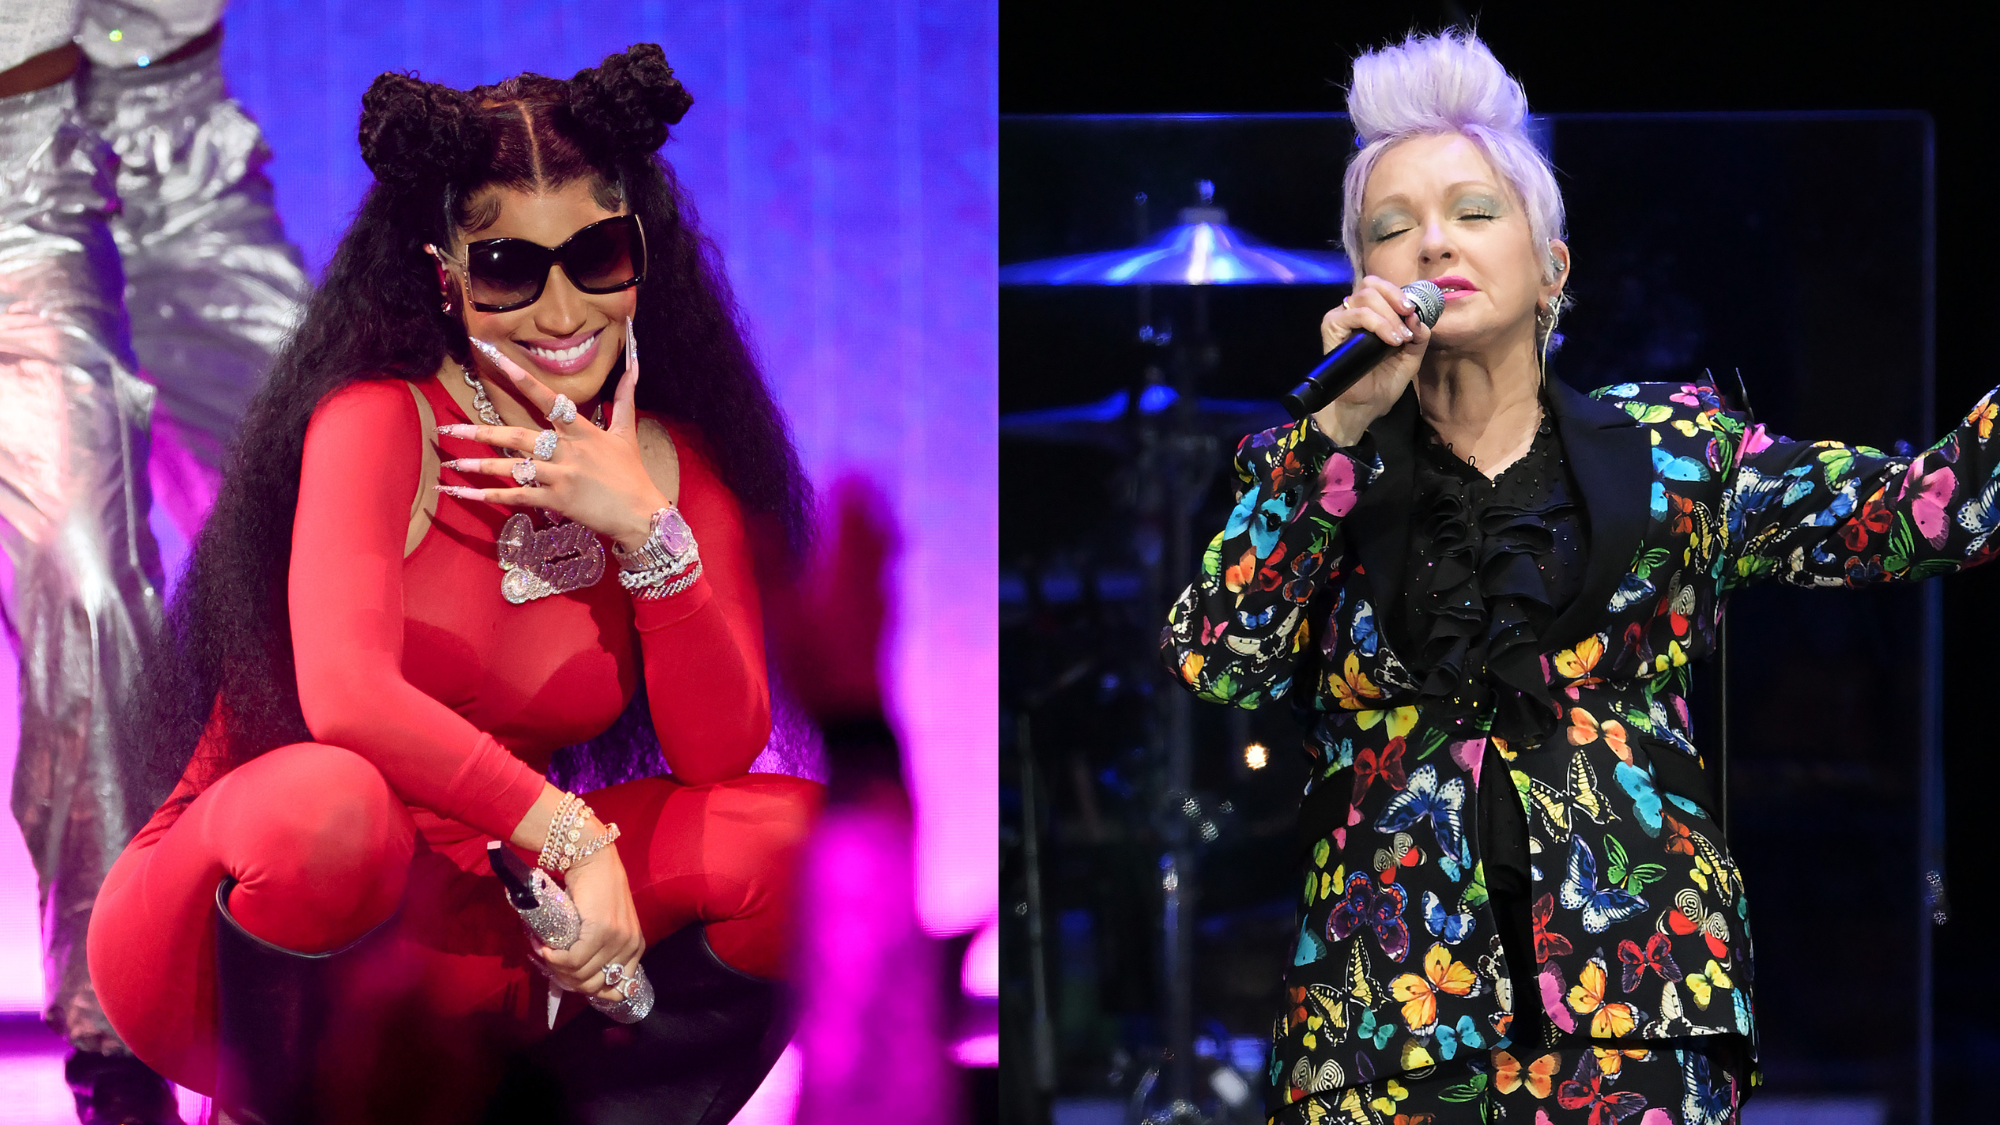 Nicki Minaj Surprises Crowd With Cyndi Lauper Duet At Pink Friday 2 Tour Stop In NYC